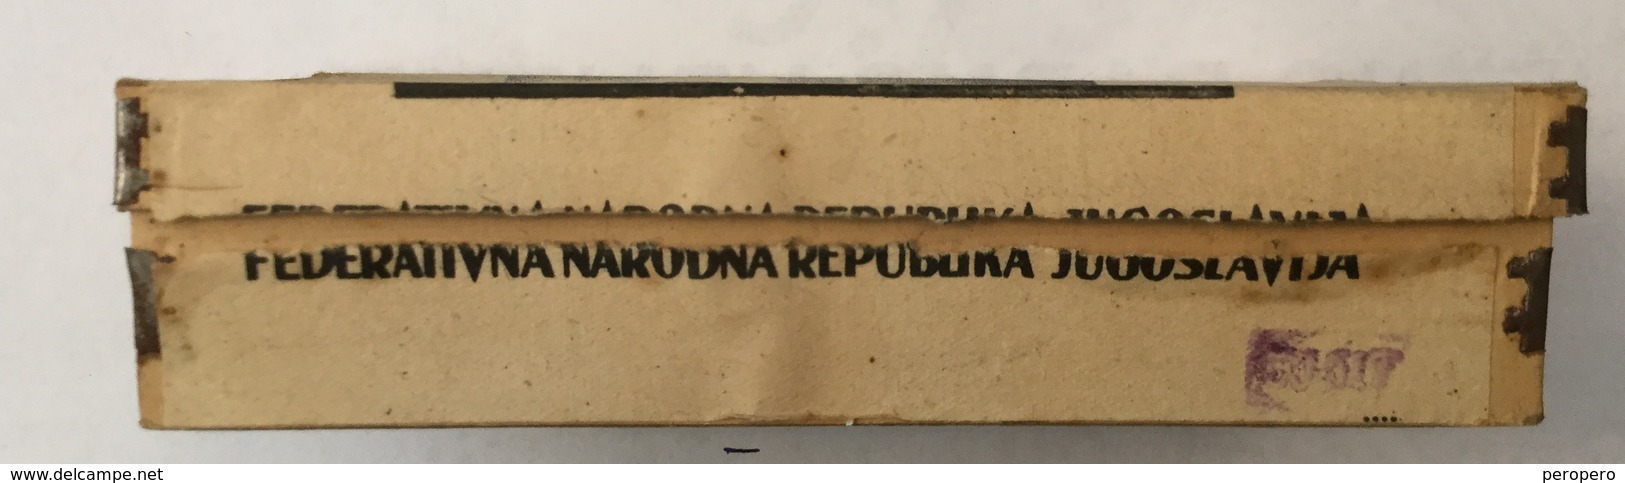 EMPTY  TOBACCO  BOX    SUTJESKA   100 CIGARETTES   FNRJ  YUGOSLAVIA - Empty Tobacco Boxes